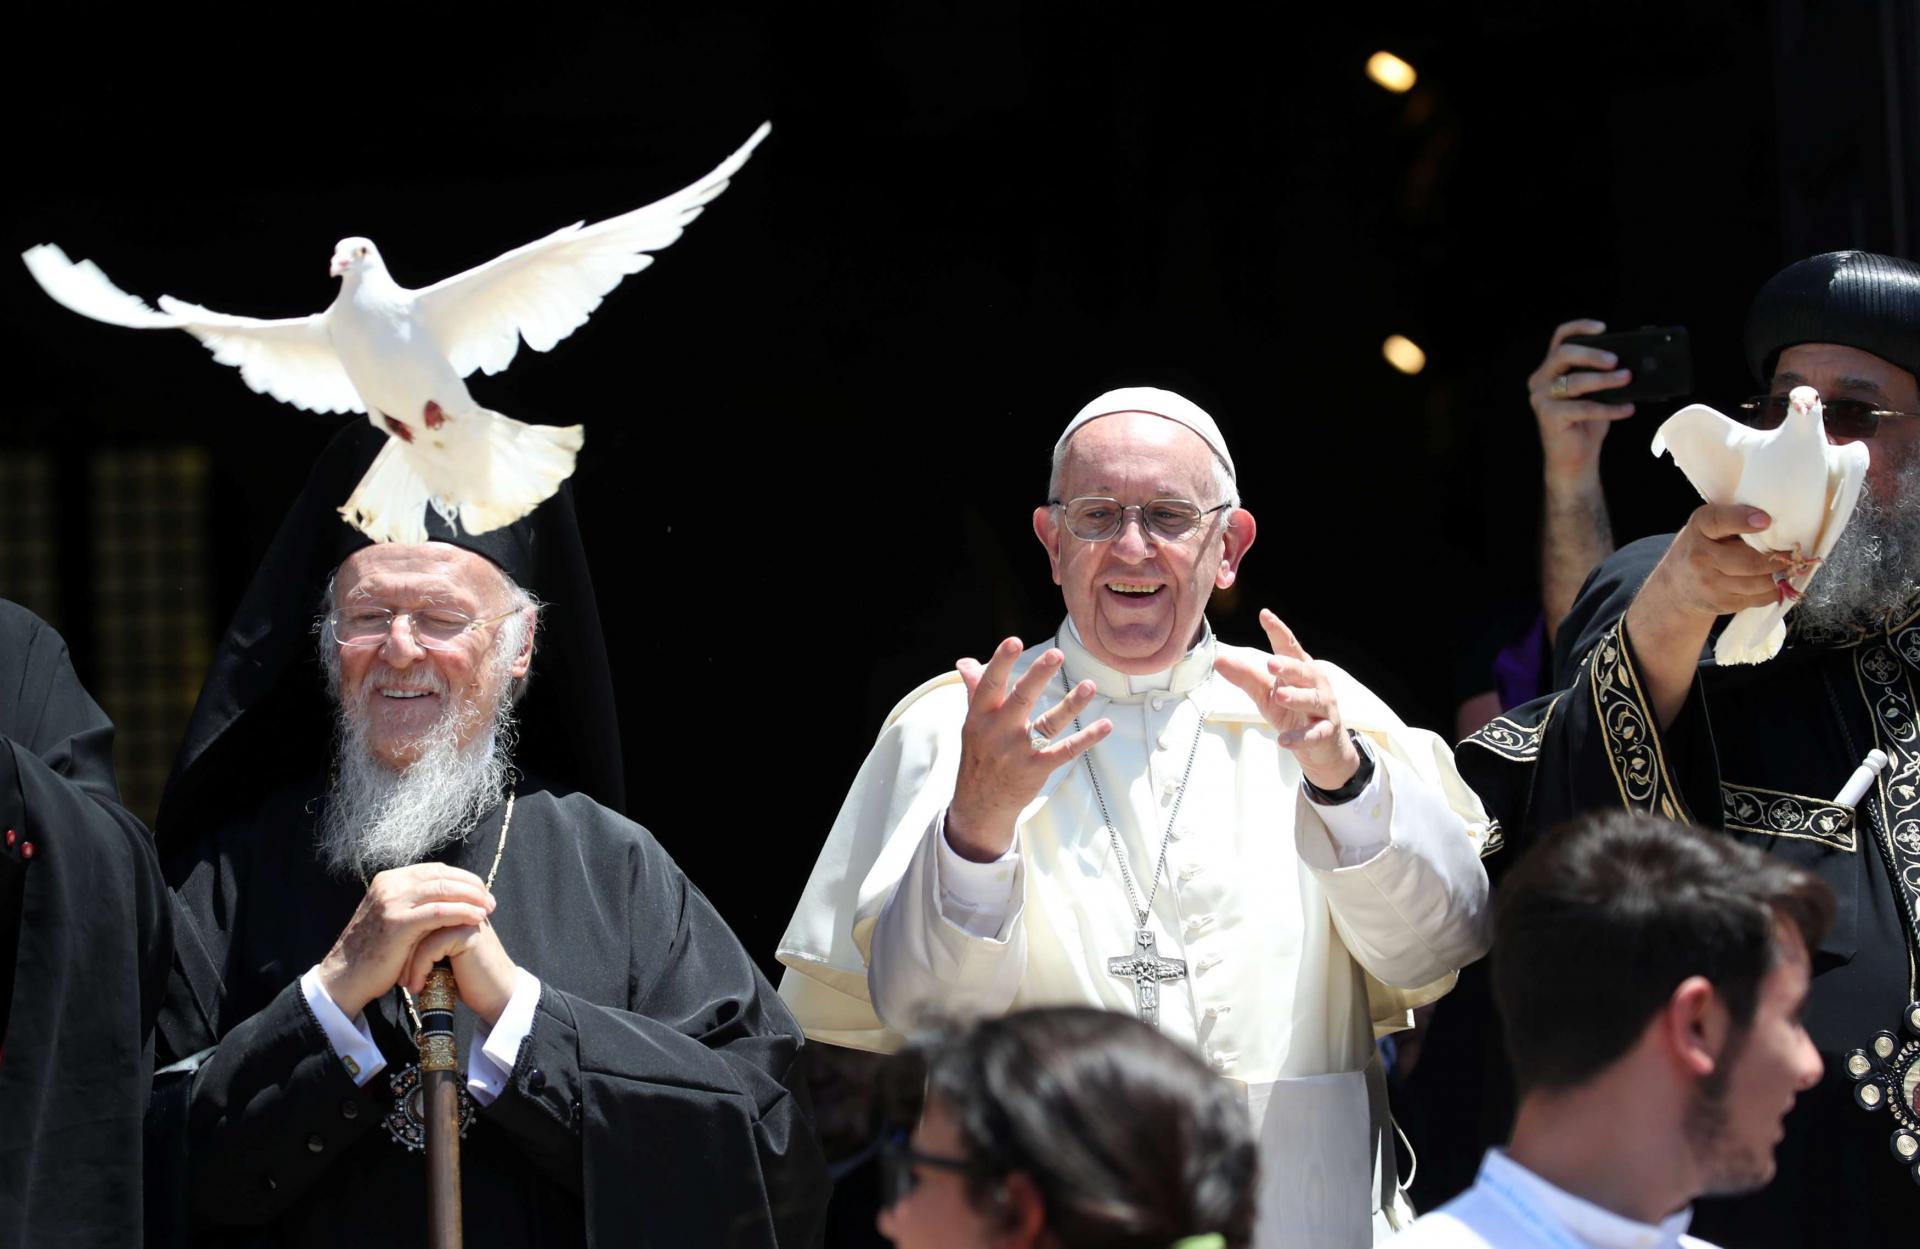 البابا فرنسيس يكثف المشاورات لحماية المسيحيين